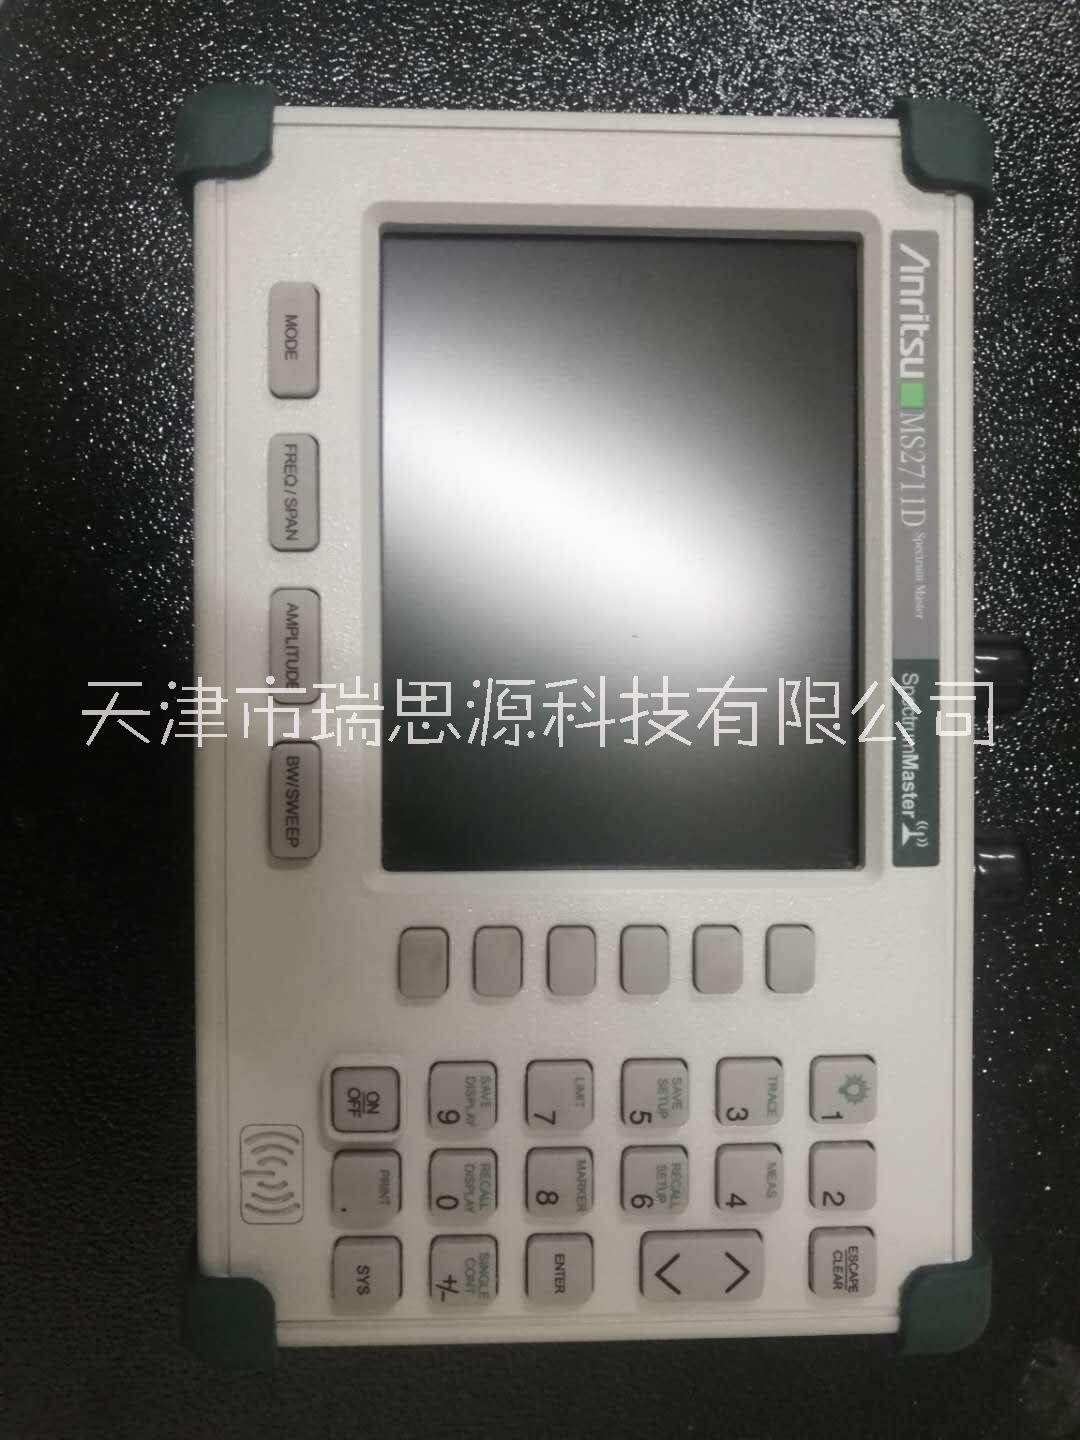 现货出售日本安立 AnritsuMS2711D手持式频谱分析仪